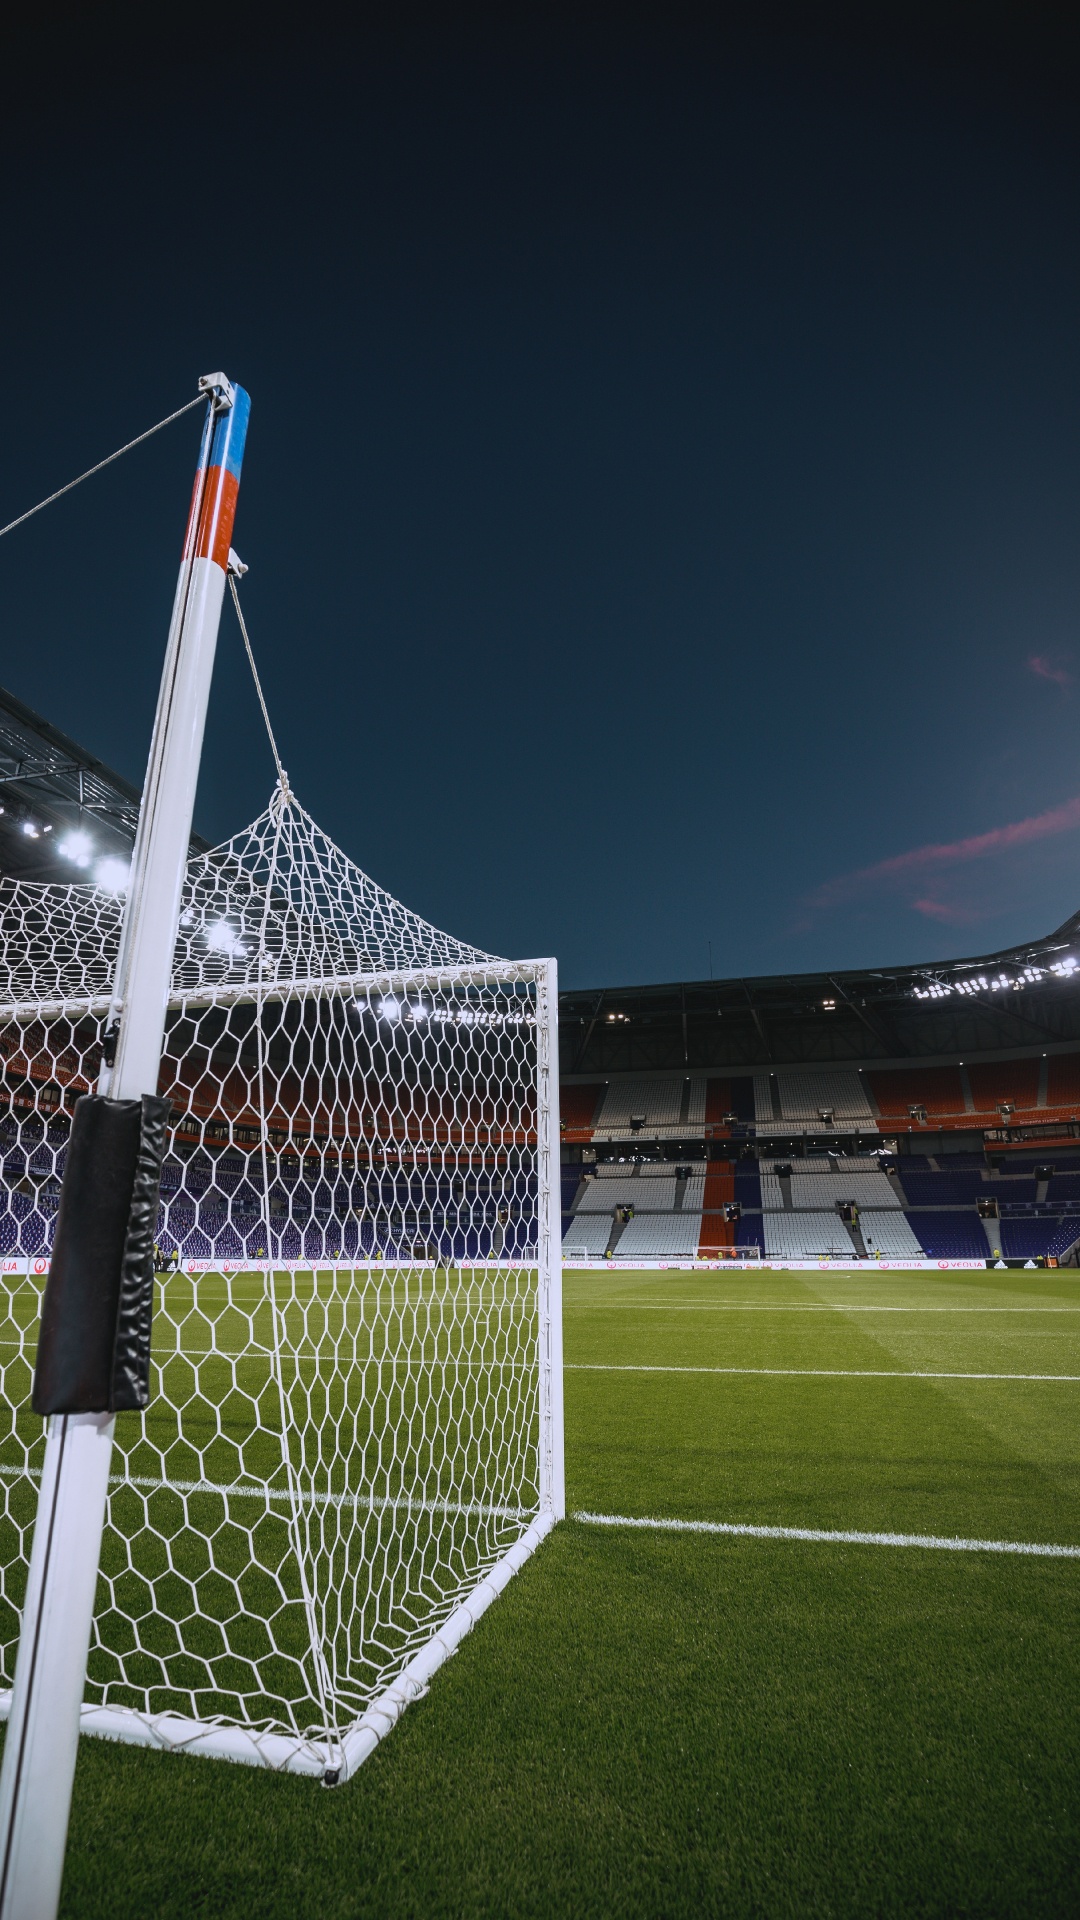 Drapeau Blanc et Rouge Sur le Terrain de Football Pendant la Nuit. Wallpaper in 1080x1920 Resolution